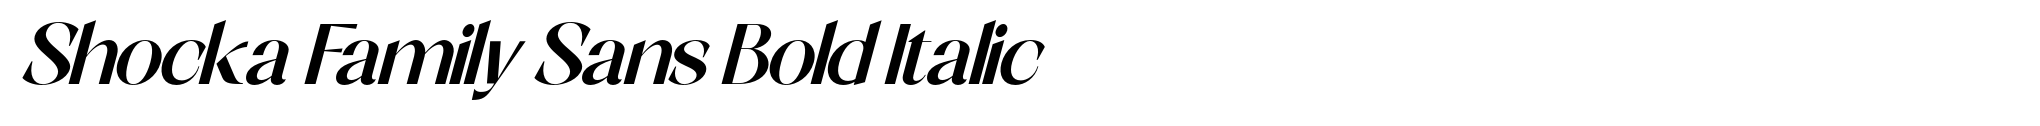 Shocka Family Sans Bold Italic image